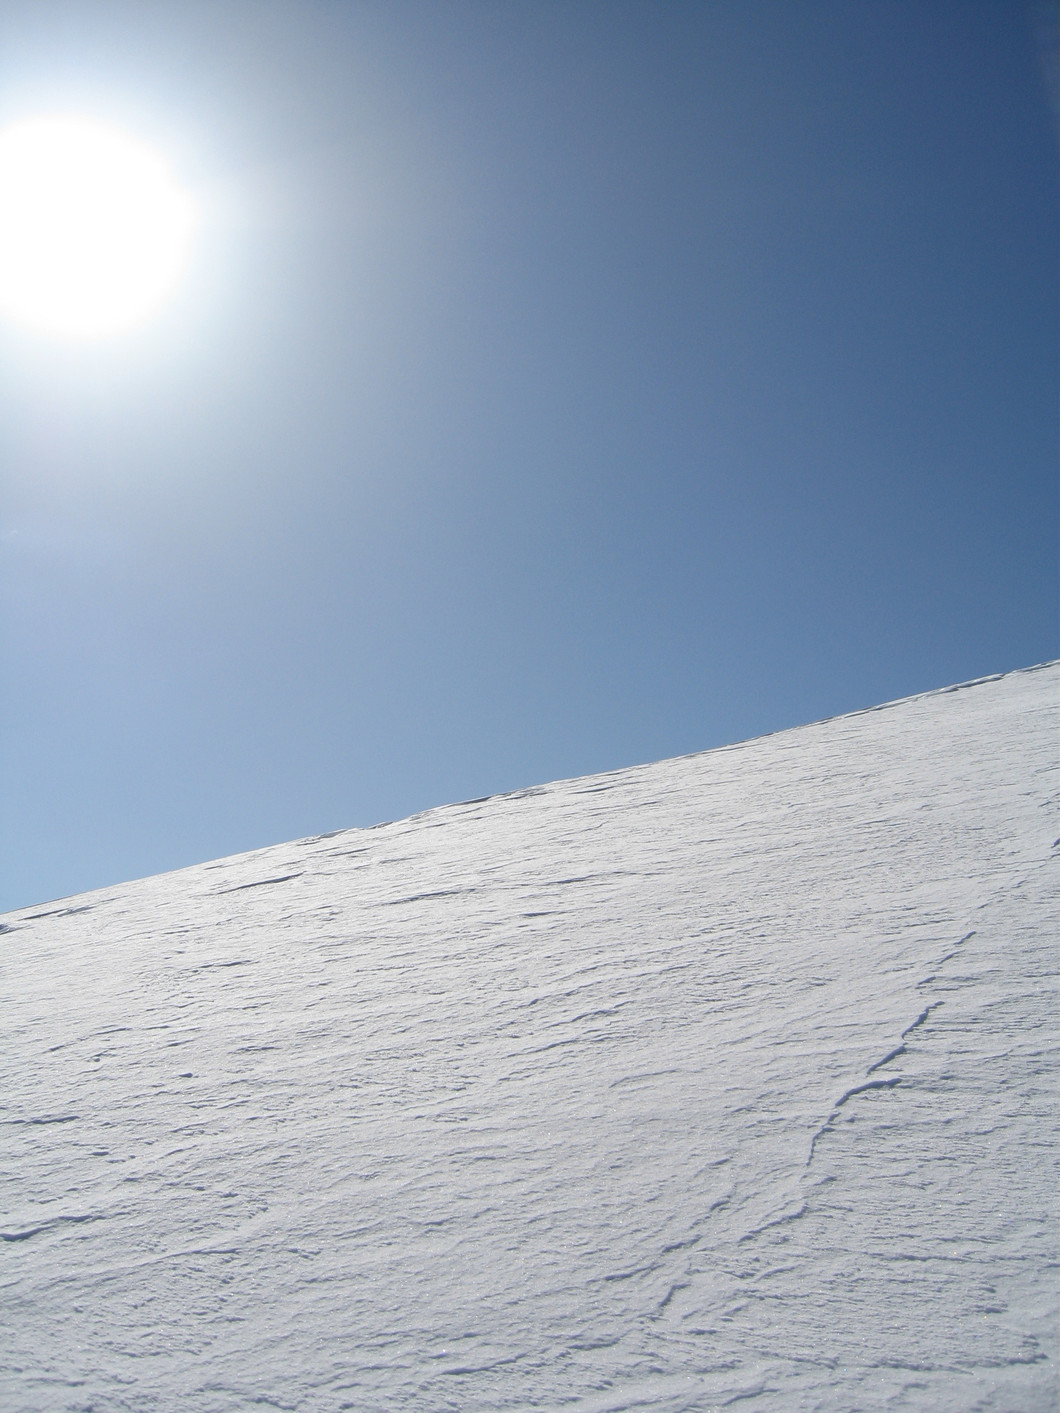 Neige à l'Oberland bernois